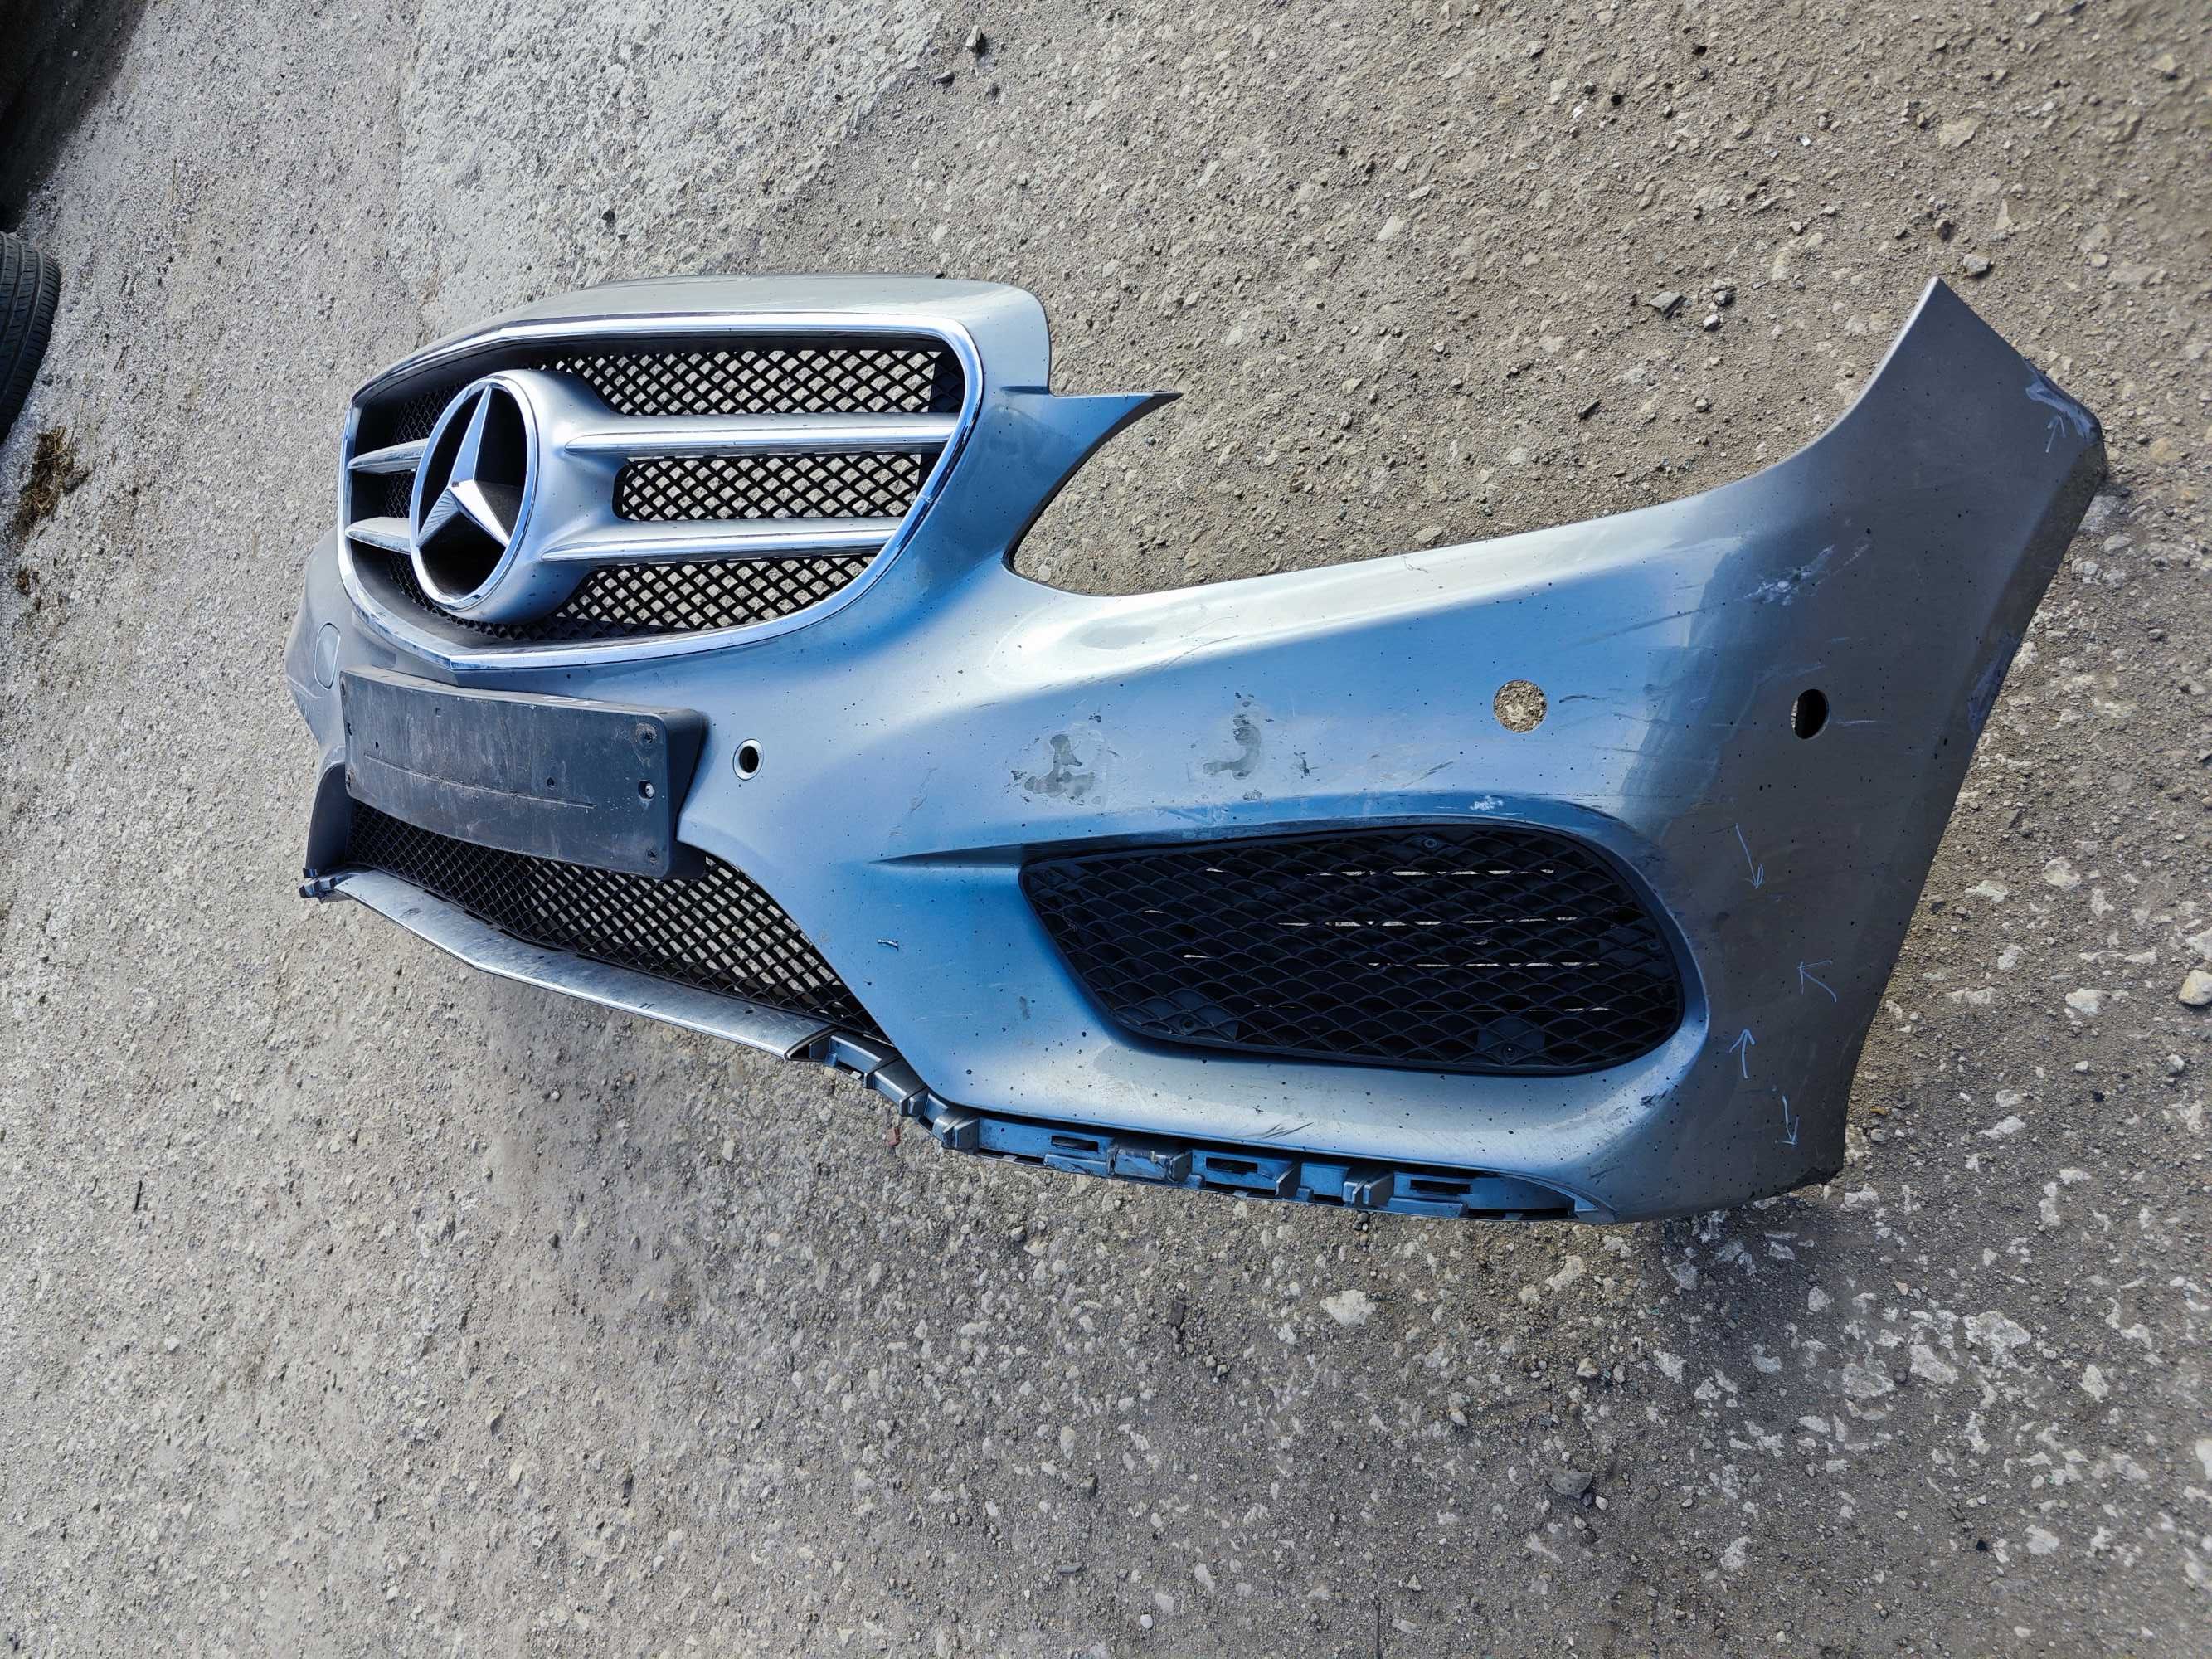 Оригинална AMG предна броня за Mercedes W212 Facelift Мерцедес Е